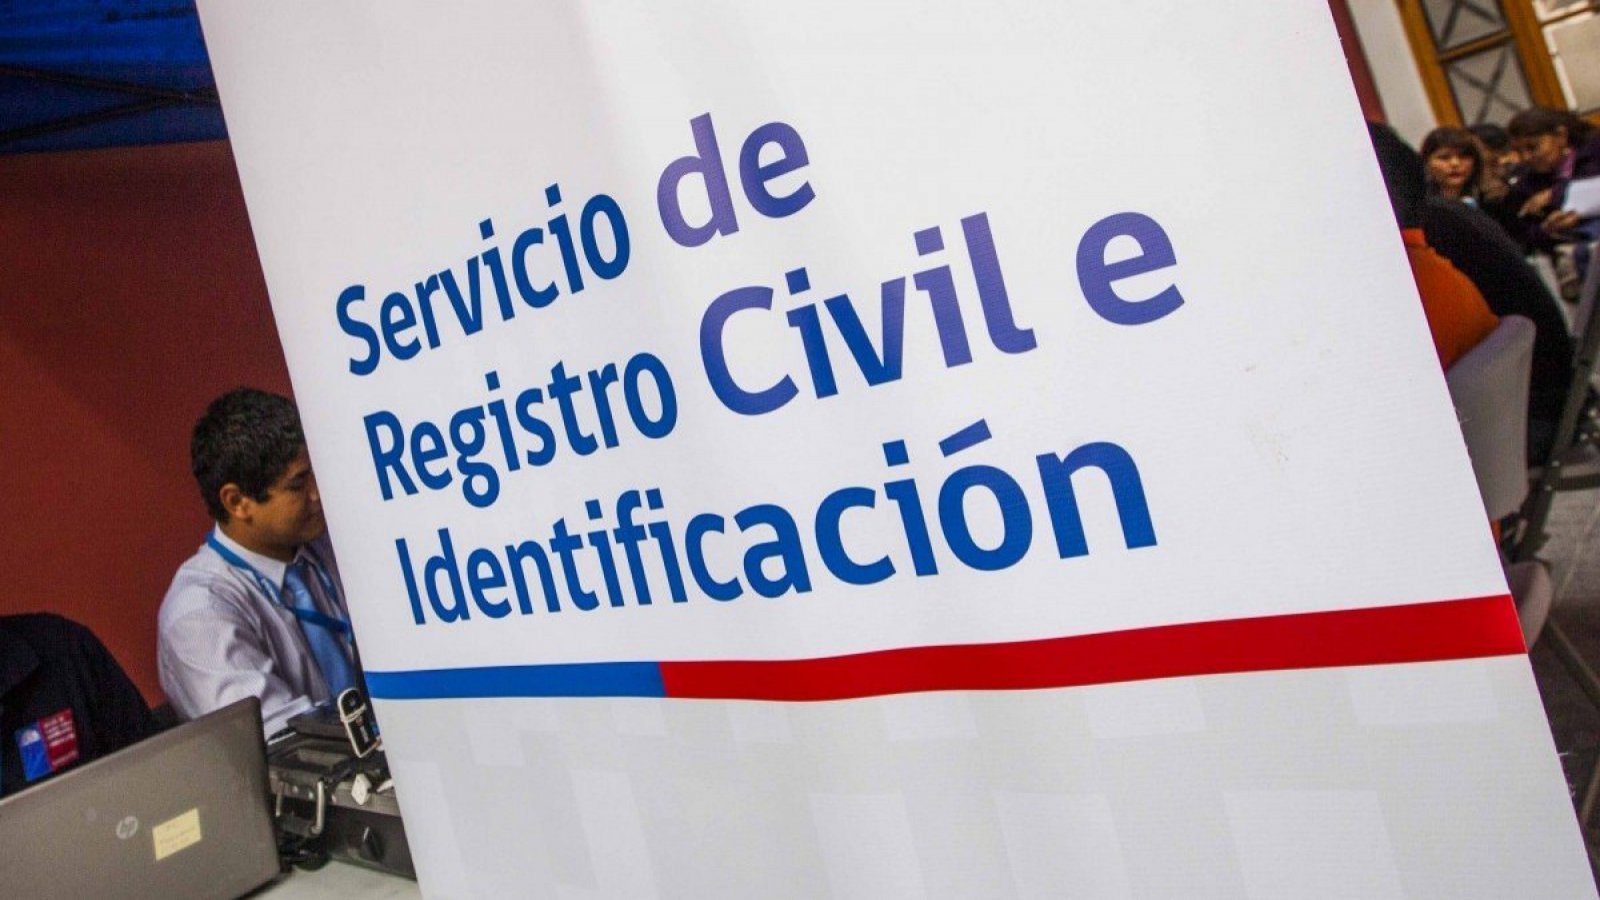 Registro Civil e identificación. Cartel con logo.